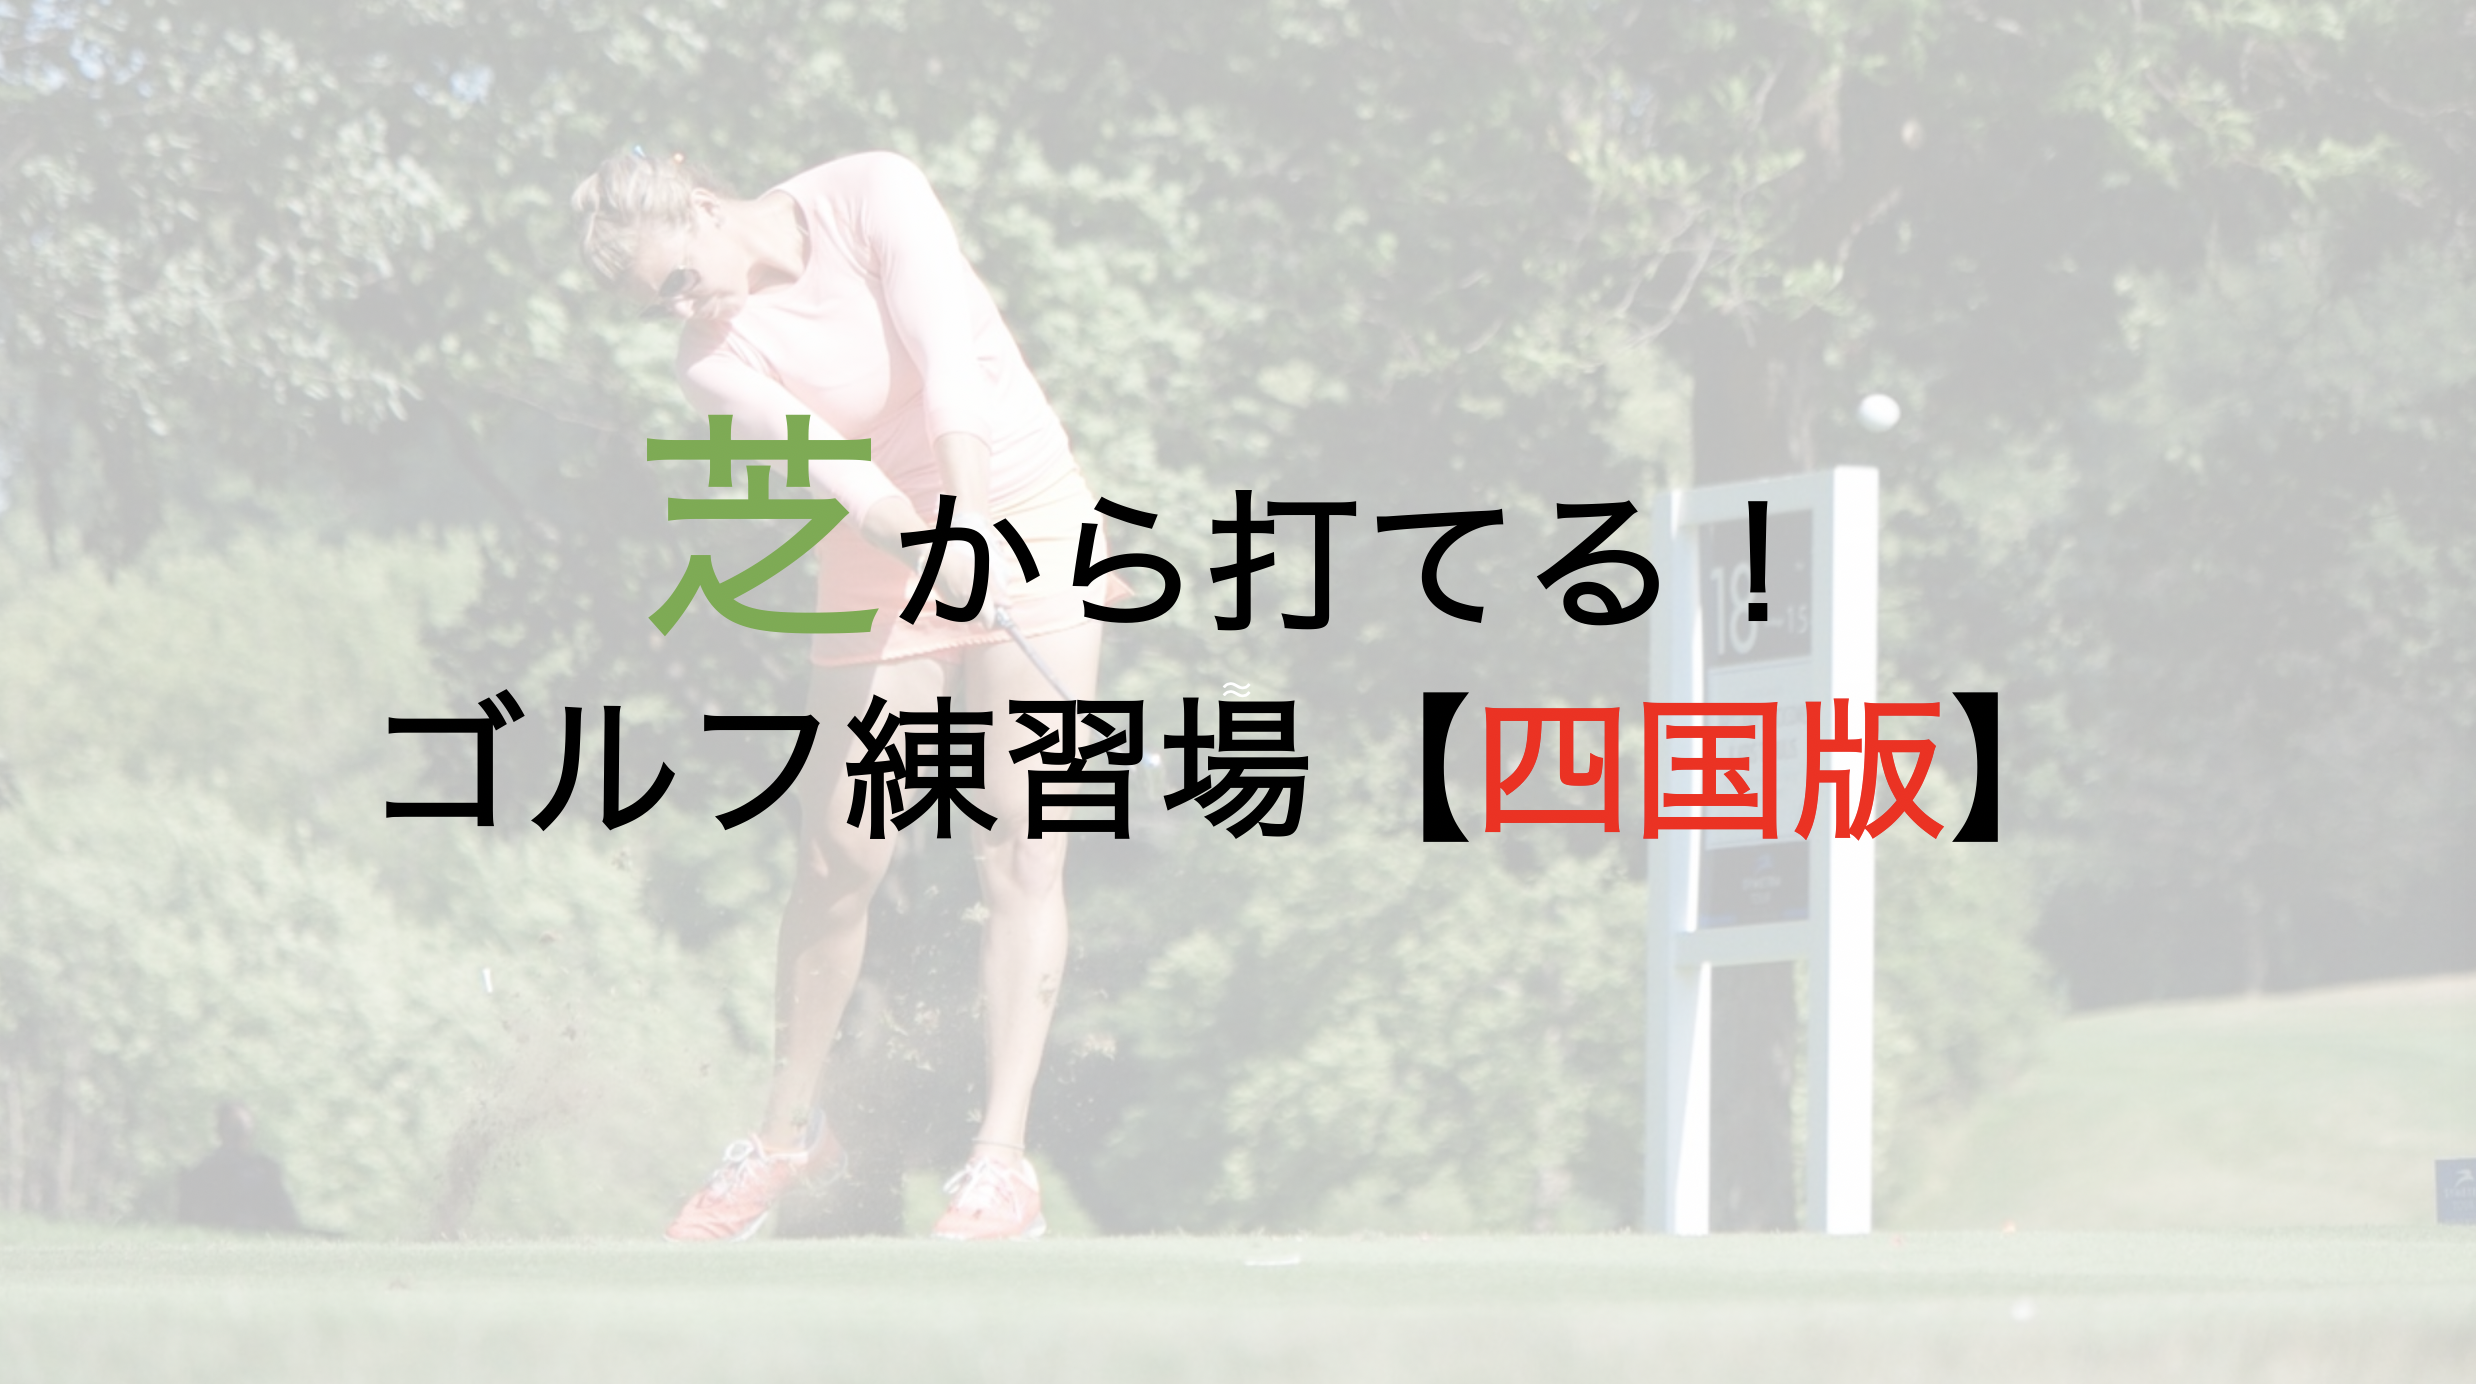 マットではなく芝から打てるゴルフ練習場【四国版】